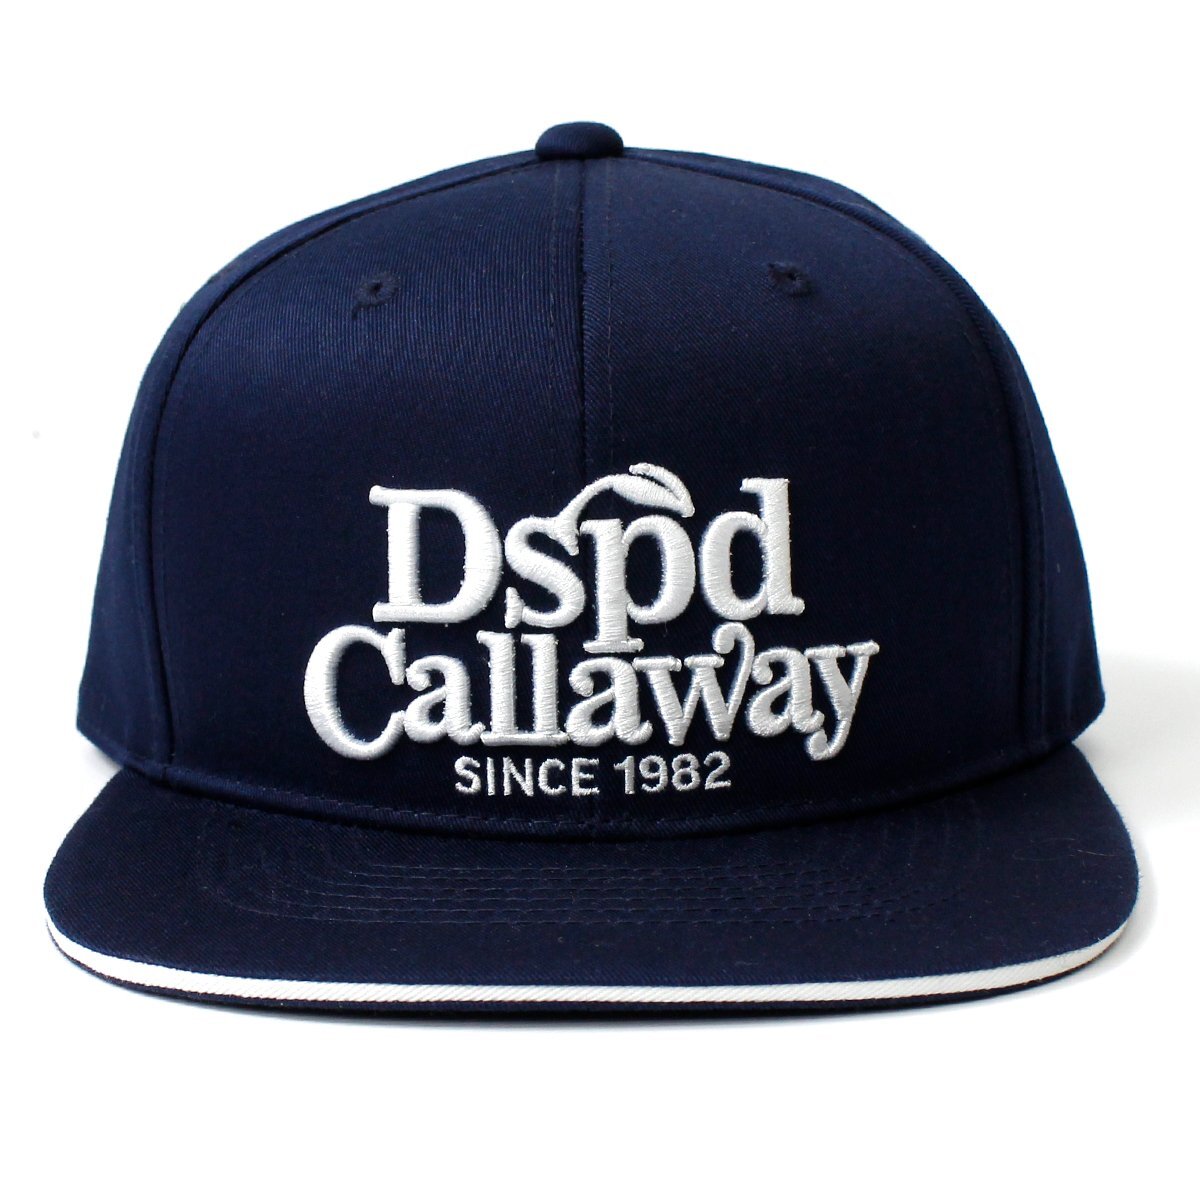 新品 Callaway キャロウェイ キャップ 帽子 平ツバ サイズフリー ゴルフ スポーツ ロゴ刺繍 DSPD 紺 ネイビー ◆CN1936の画像4